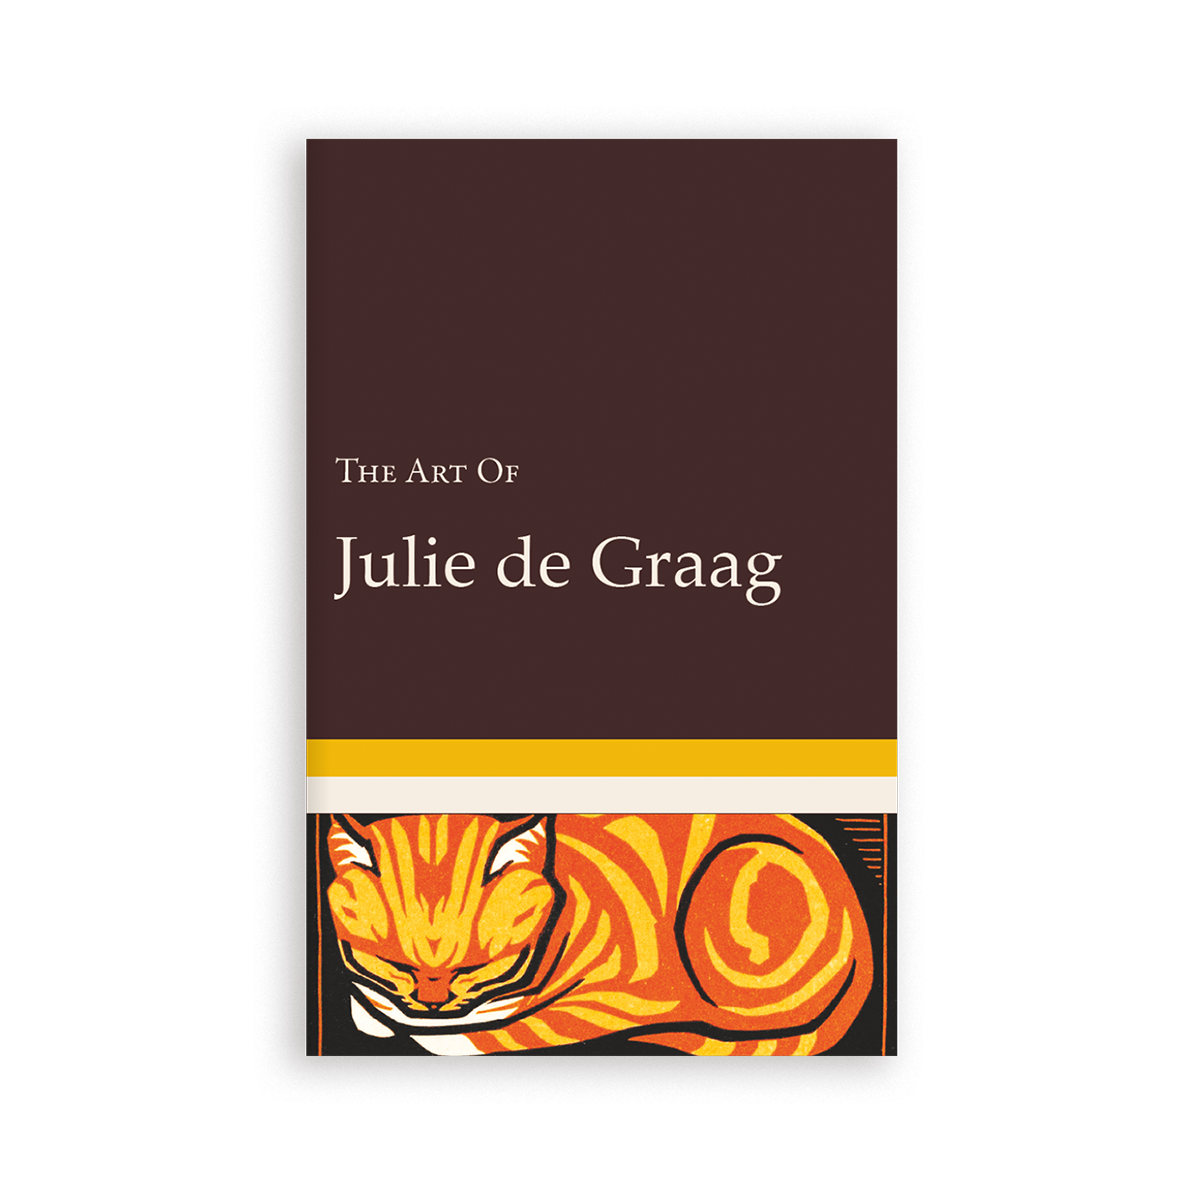 The Art of Julie de Graag